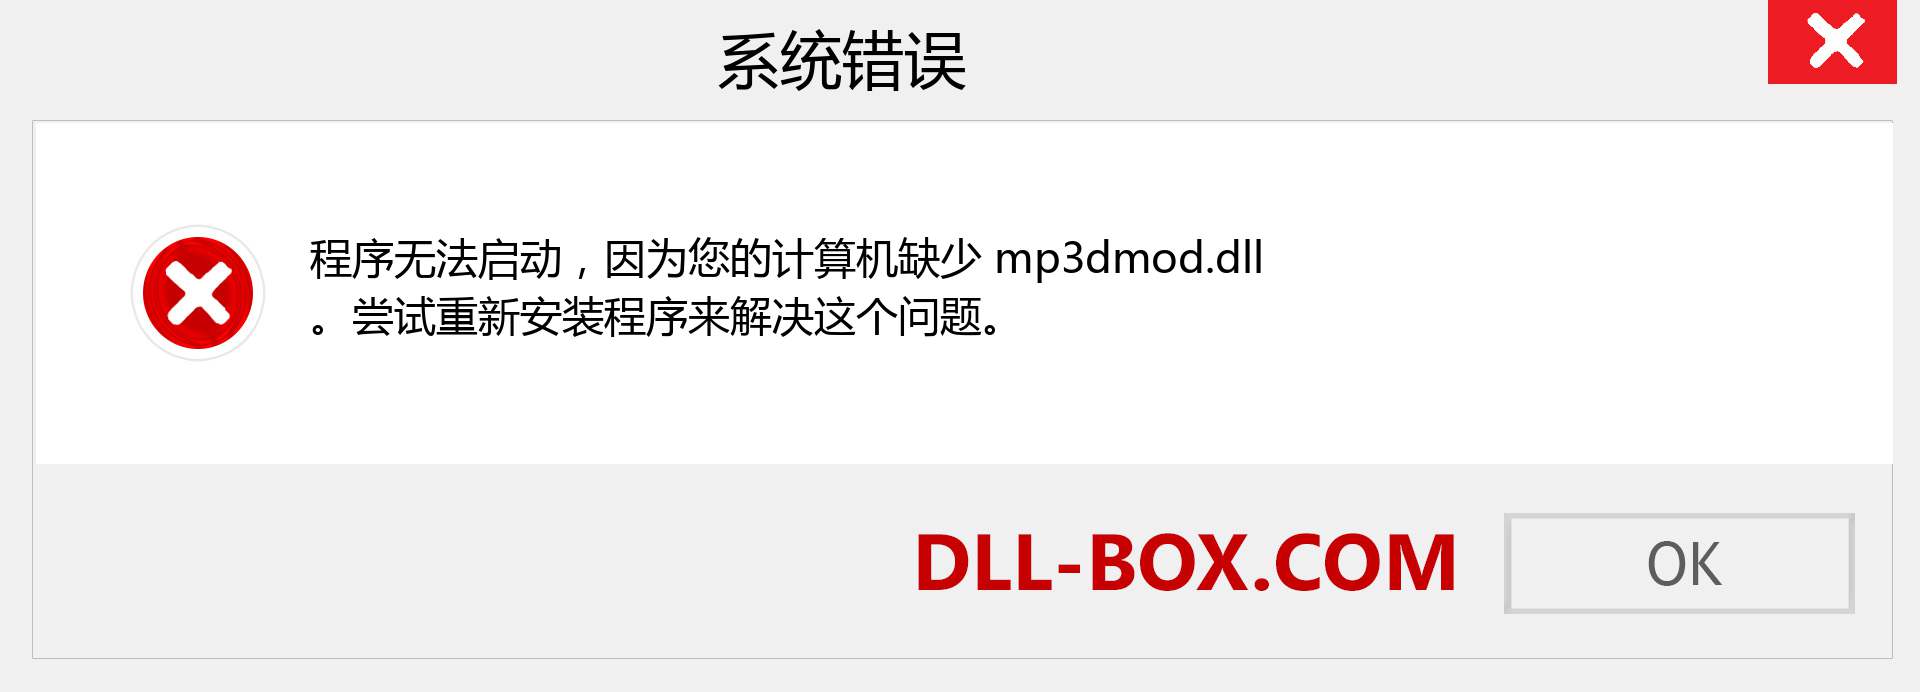 mp3dmod.dll 文件丢失？。 适用于 Windows 7、8、10 的下载 - 修复 Windows、照片、图像上的 mp3dmod dll 丢失错误